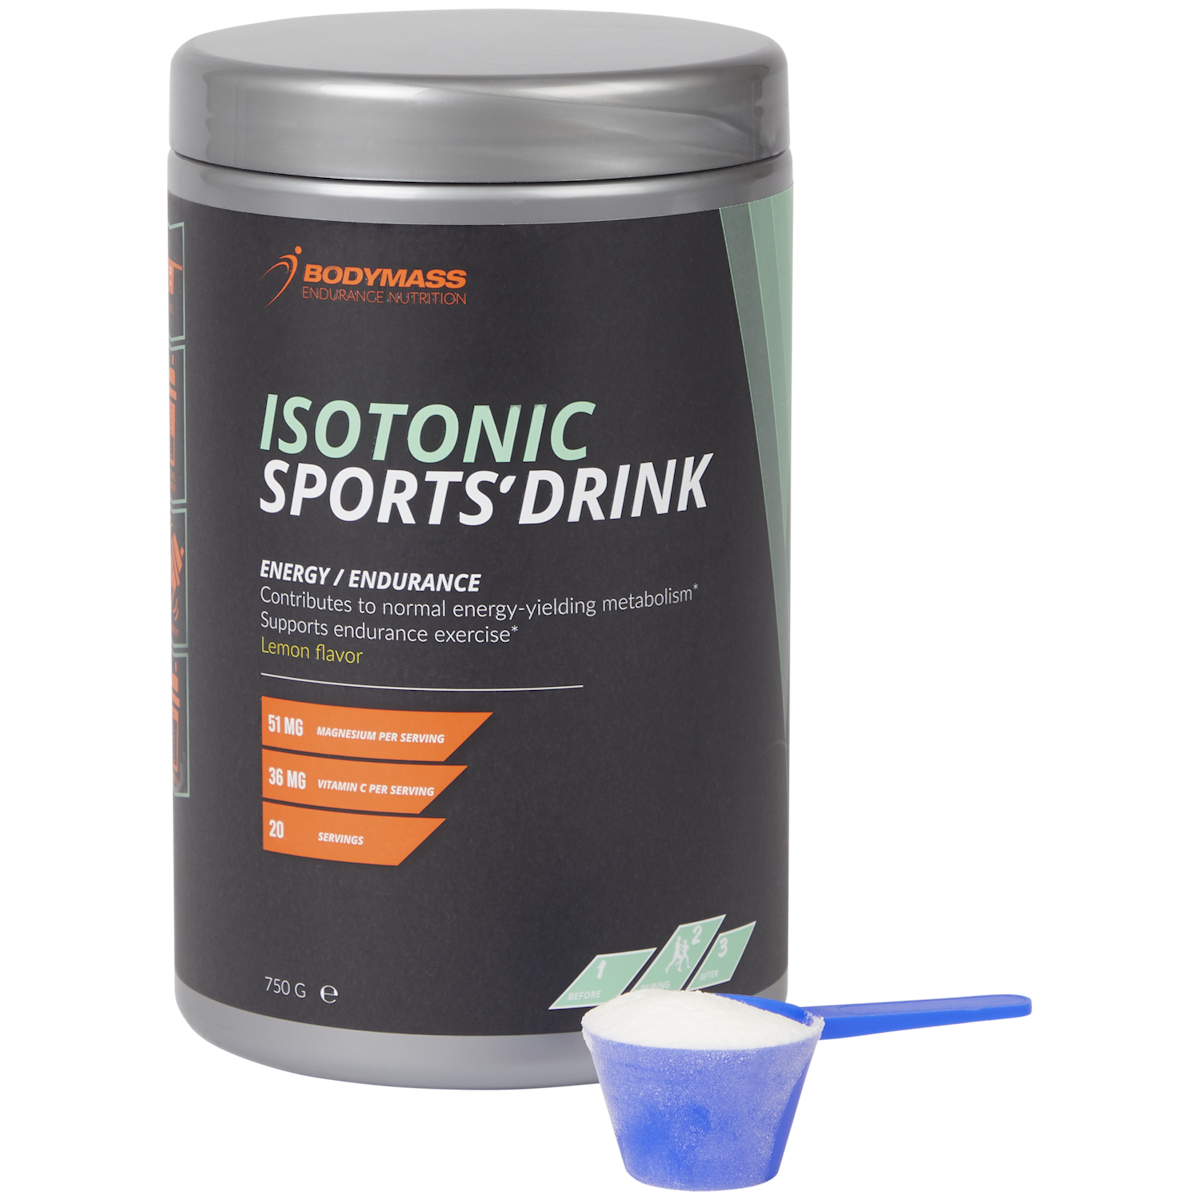 Bodymass Isotonic Sports' Drink